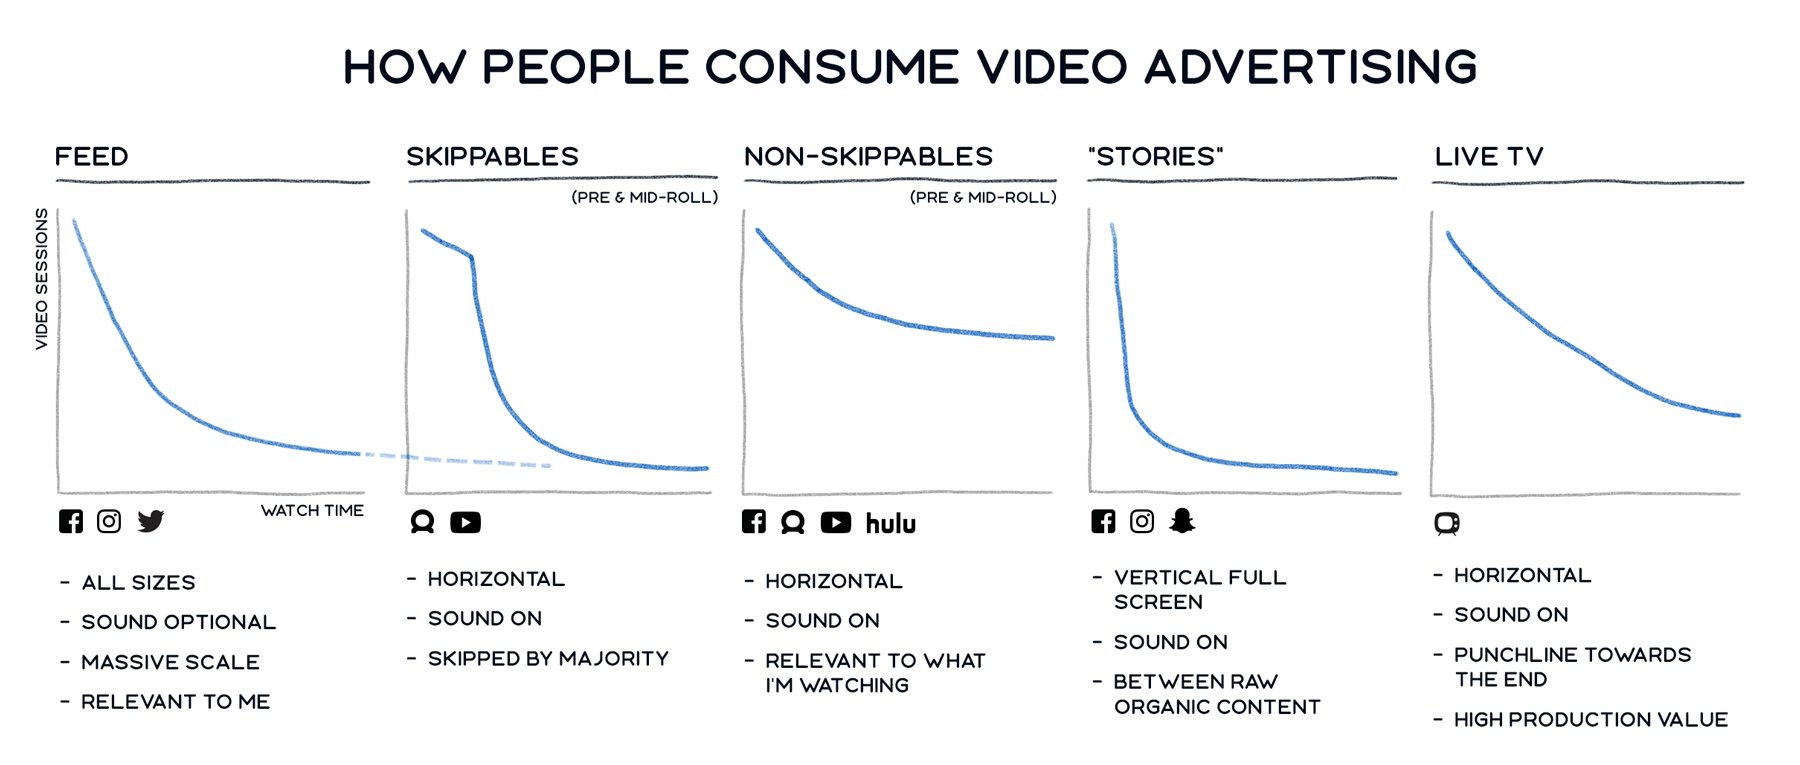 facebook-in-stream-video-ads-consumption